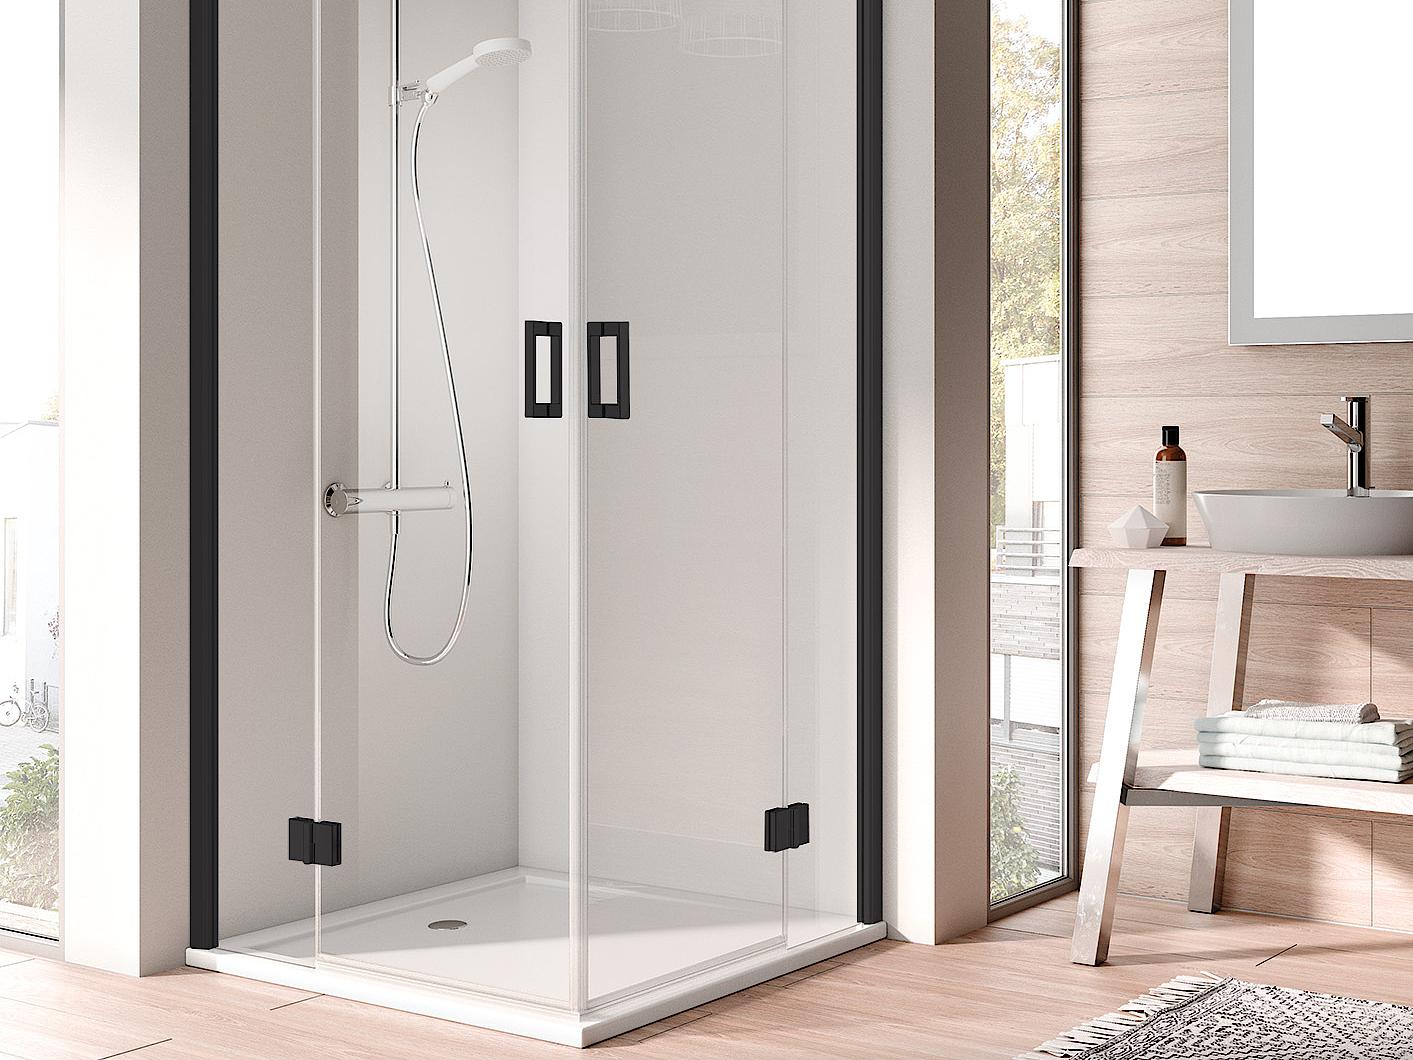 Pantový sprchový kout Kermi OSIA Rohový vstup 2-dílný (kyvné dveře s pevnými poli) – poloviční díl, černá